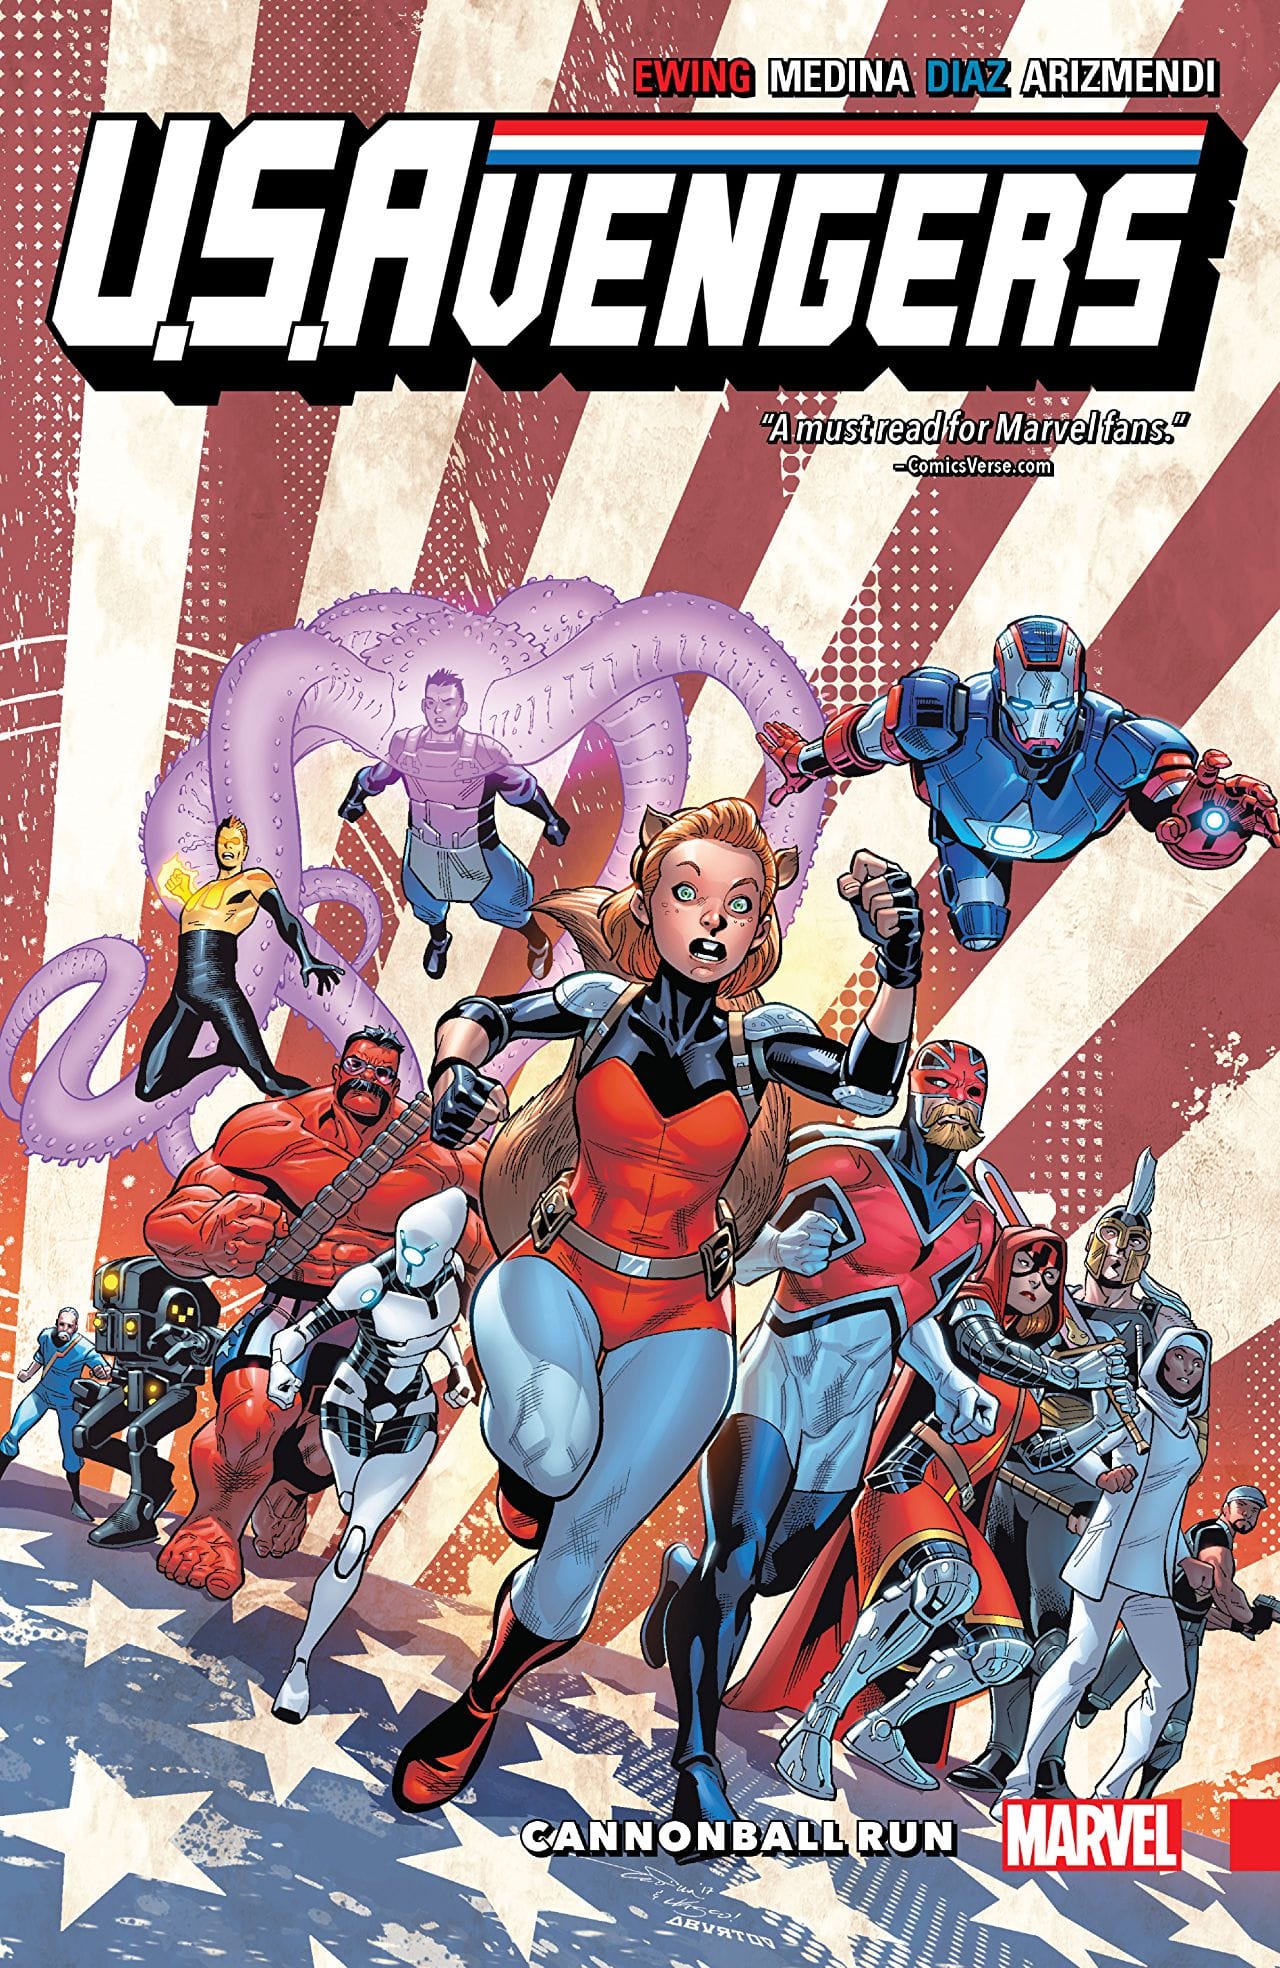 'U.S.Avengers Vol. 2: Cannonball Run' is a fun, unpredictable read